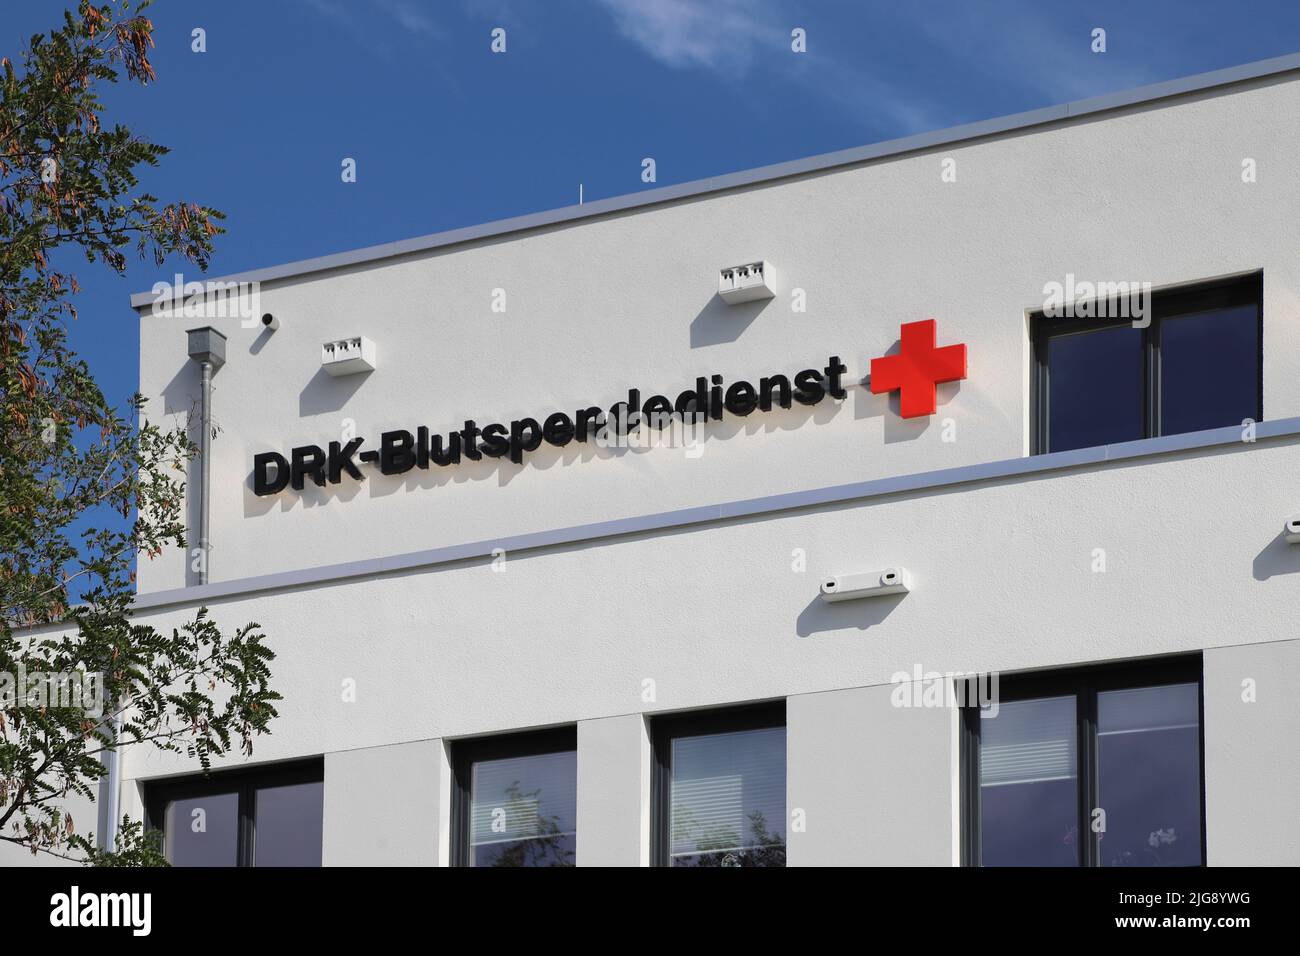 Deutschland, Berlin Steglitz, GFK-Blutspendezentrum Stockfoto